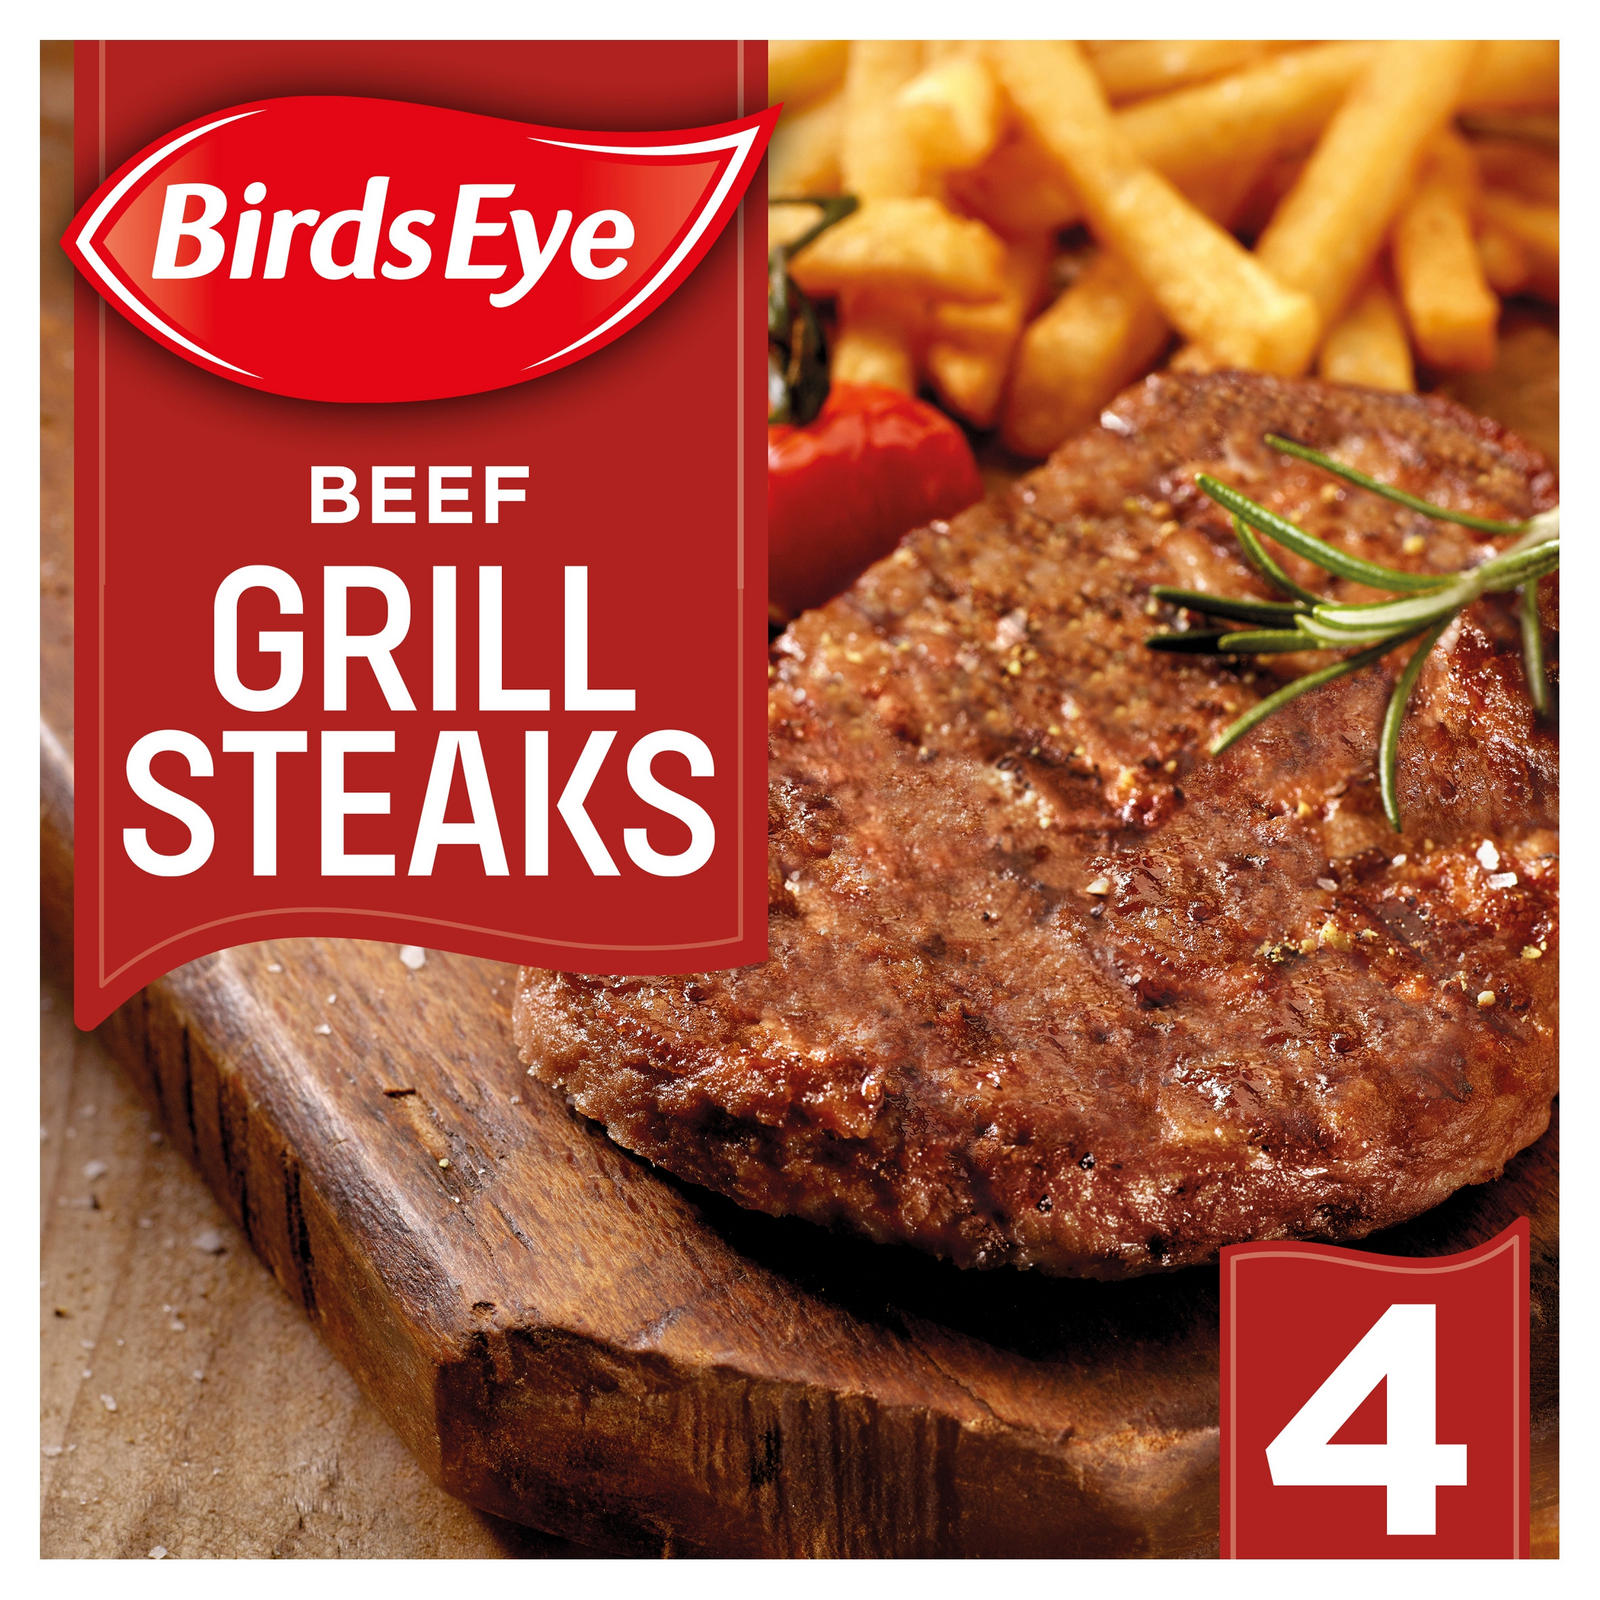 Birds Eye 4 Beef Grill Steaks 340g, Beef